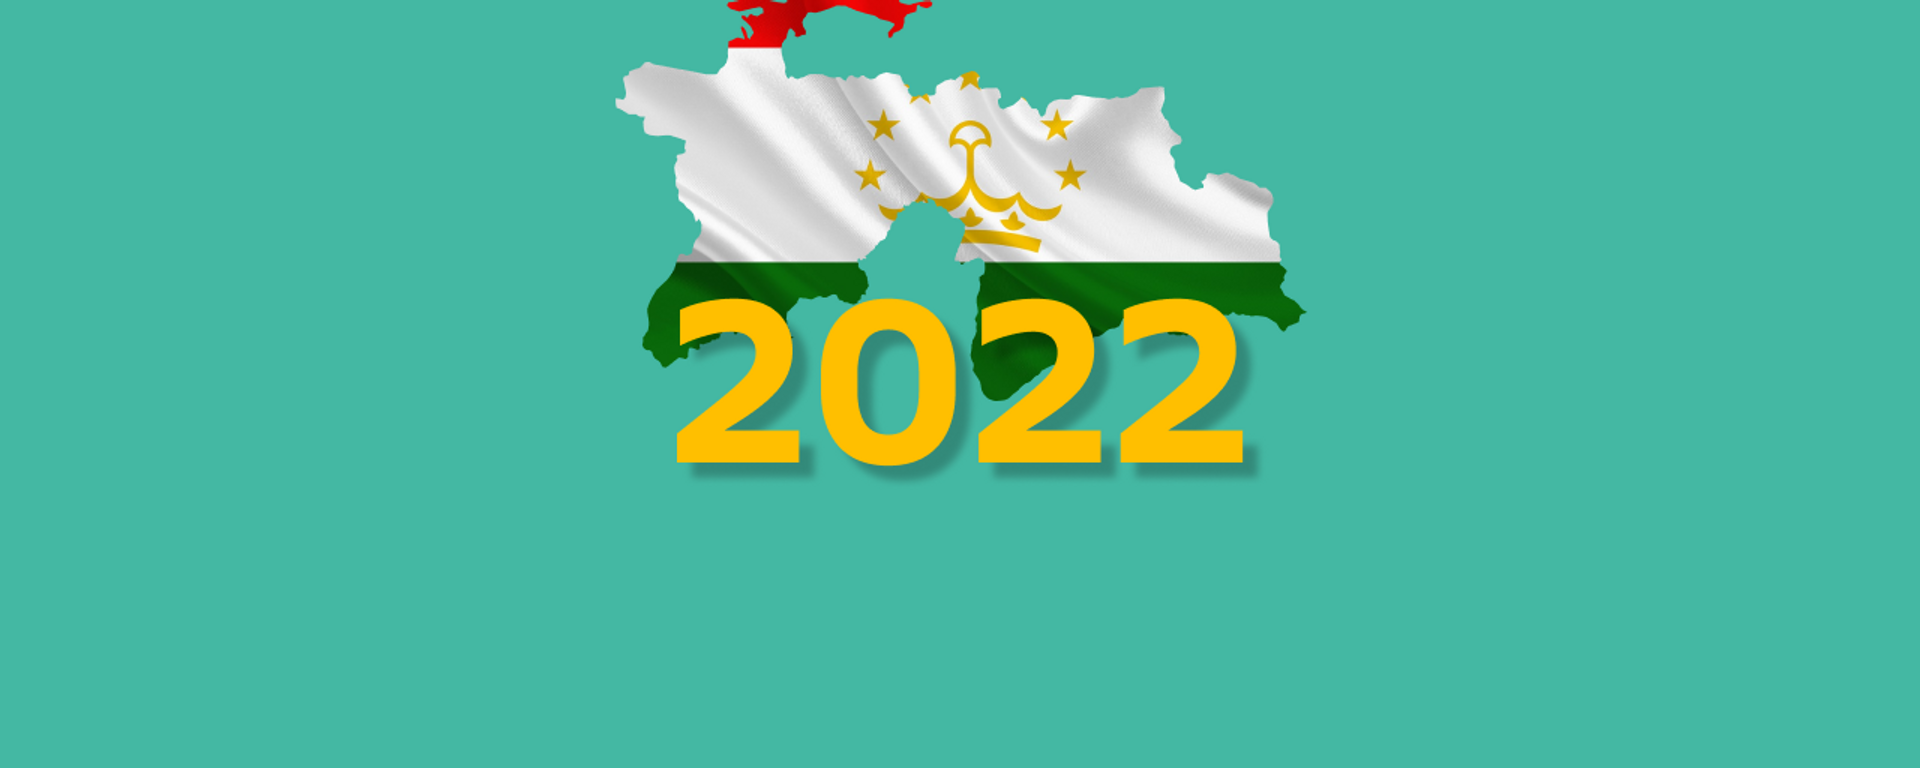 Основные события 2022 года в Таджикистане - Sputnik Тоҷикистон, 1920, 31.12.2022